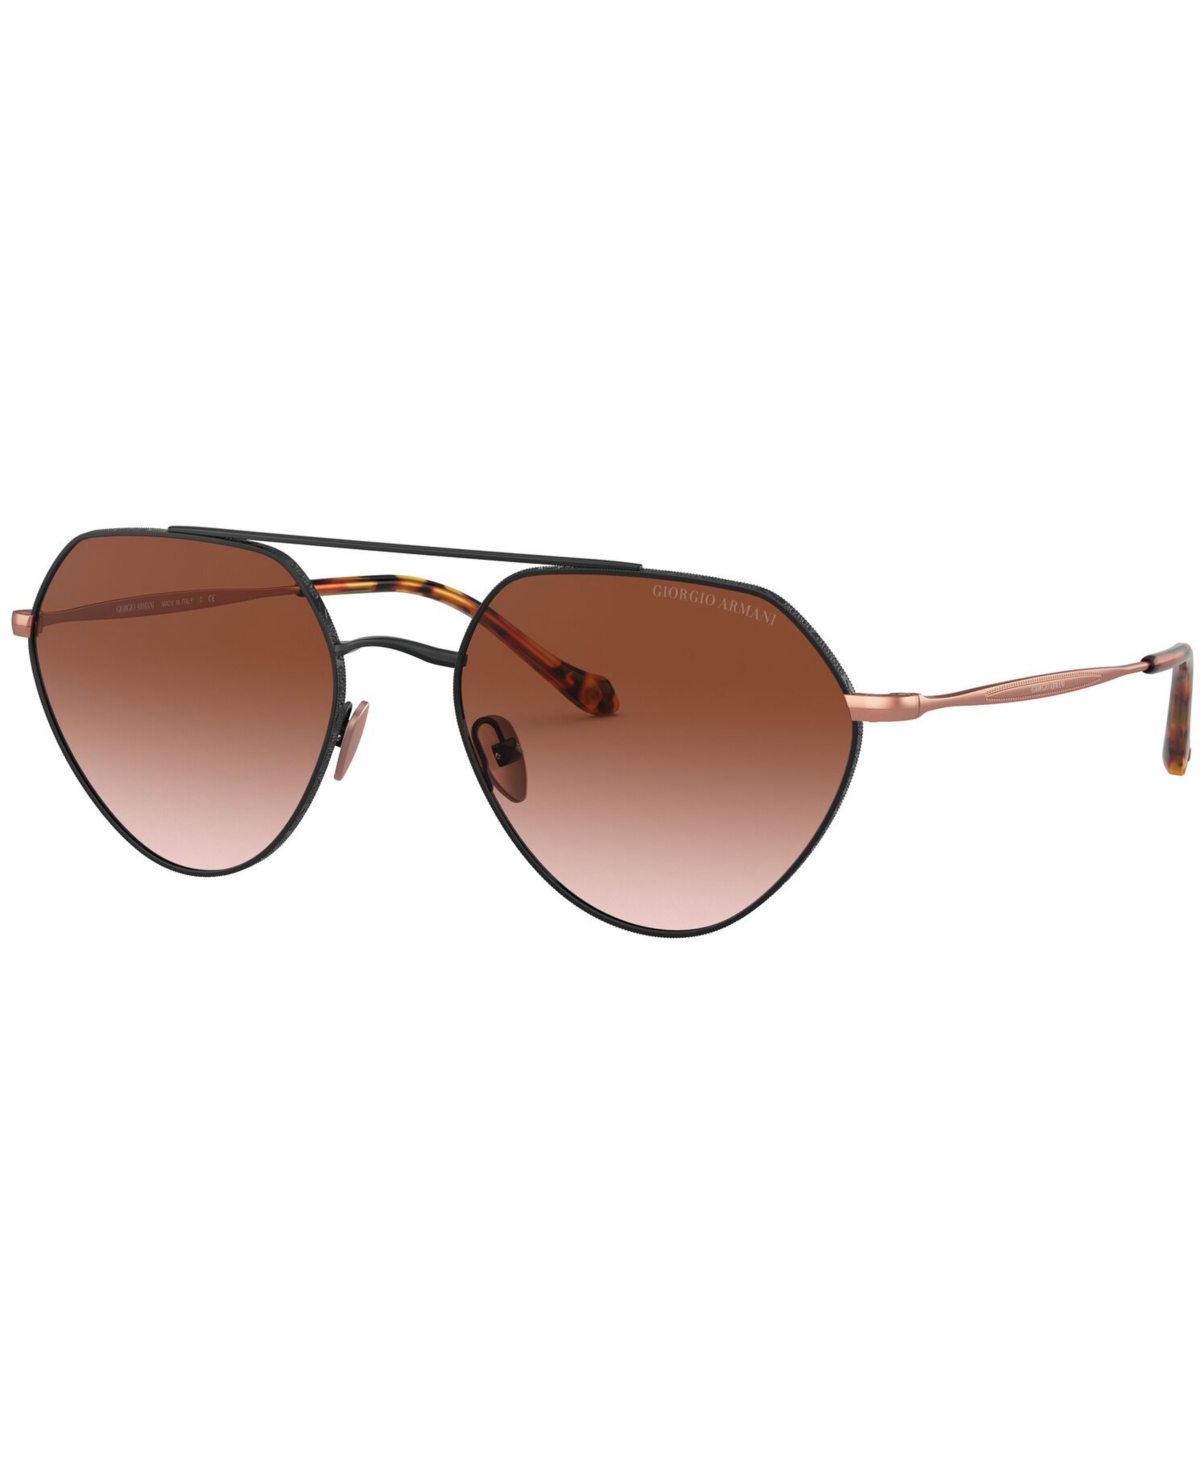 Giorgio Armani Sunglasses, 0ar6111 In Brown